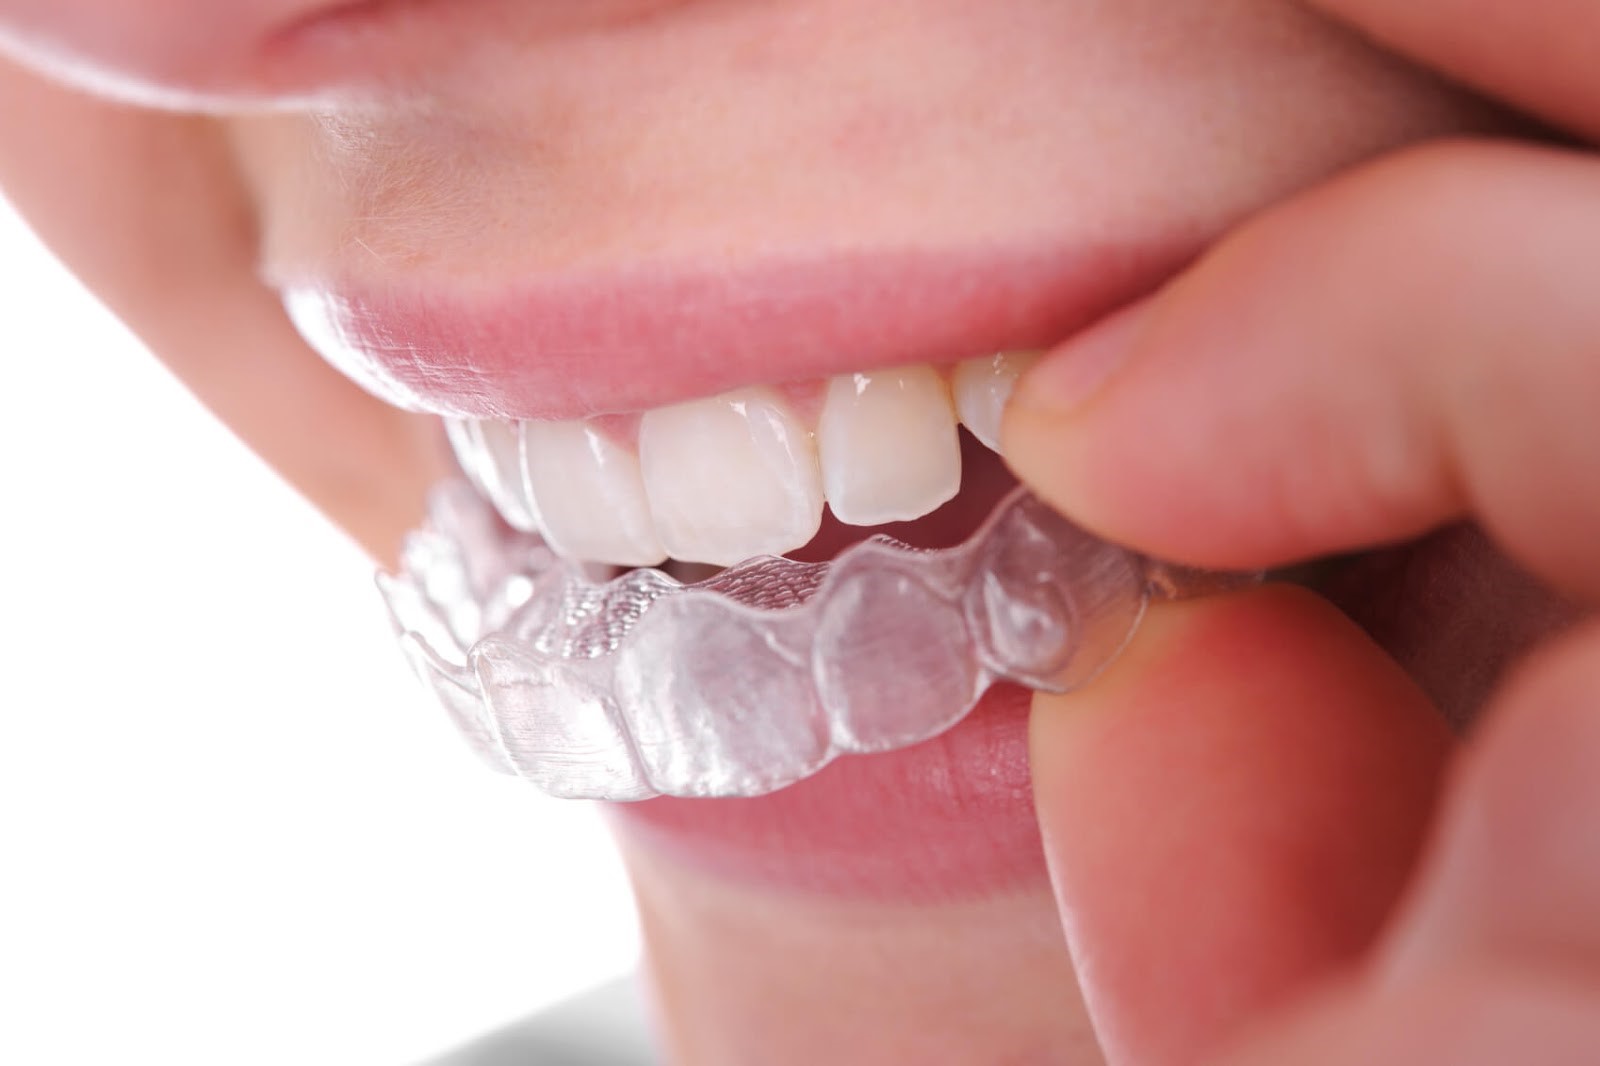 Khay niềng Invisalign trong suốt hay còn gọi là niềng răng trong suốt Invisalign, là phương pháp niềng răng hiệu quả, sử dụng khay được làm bằng nhựa trong suốt để tác động lực kéo liên tục, đưa răng di chuyển từ từ đến vị trí đều đặn trên cung hàm.